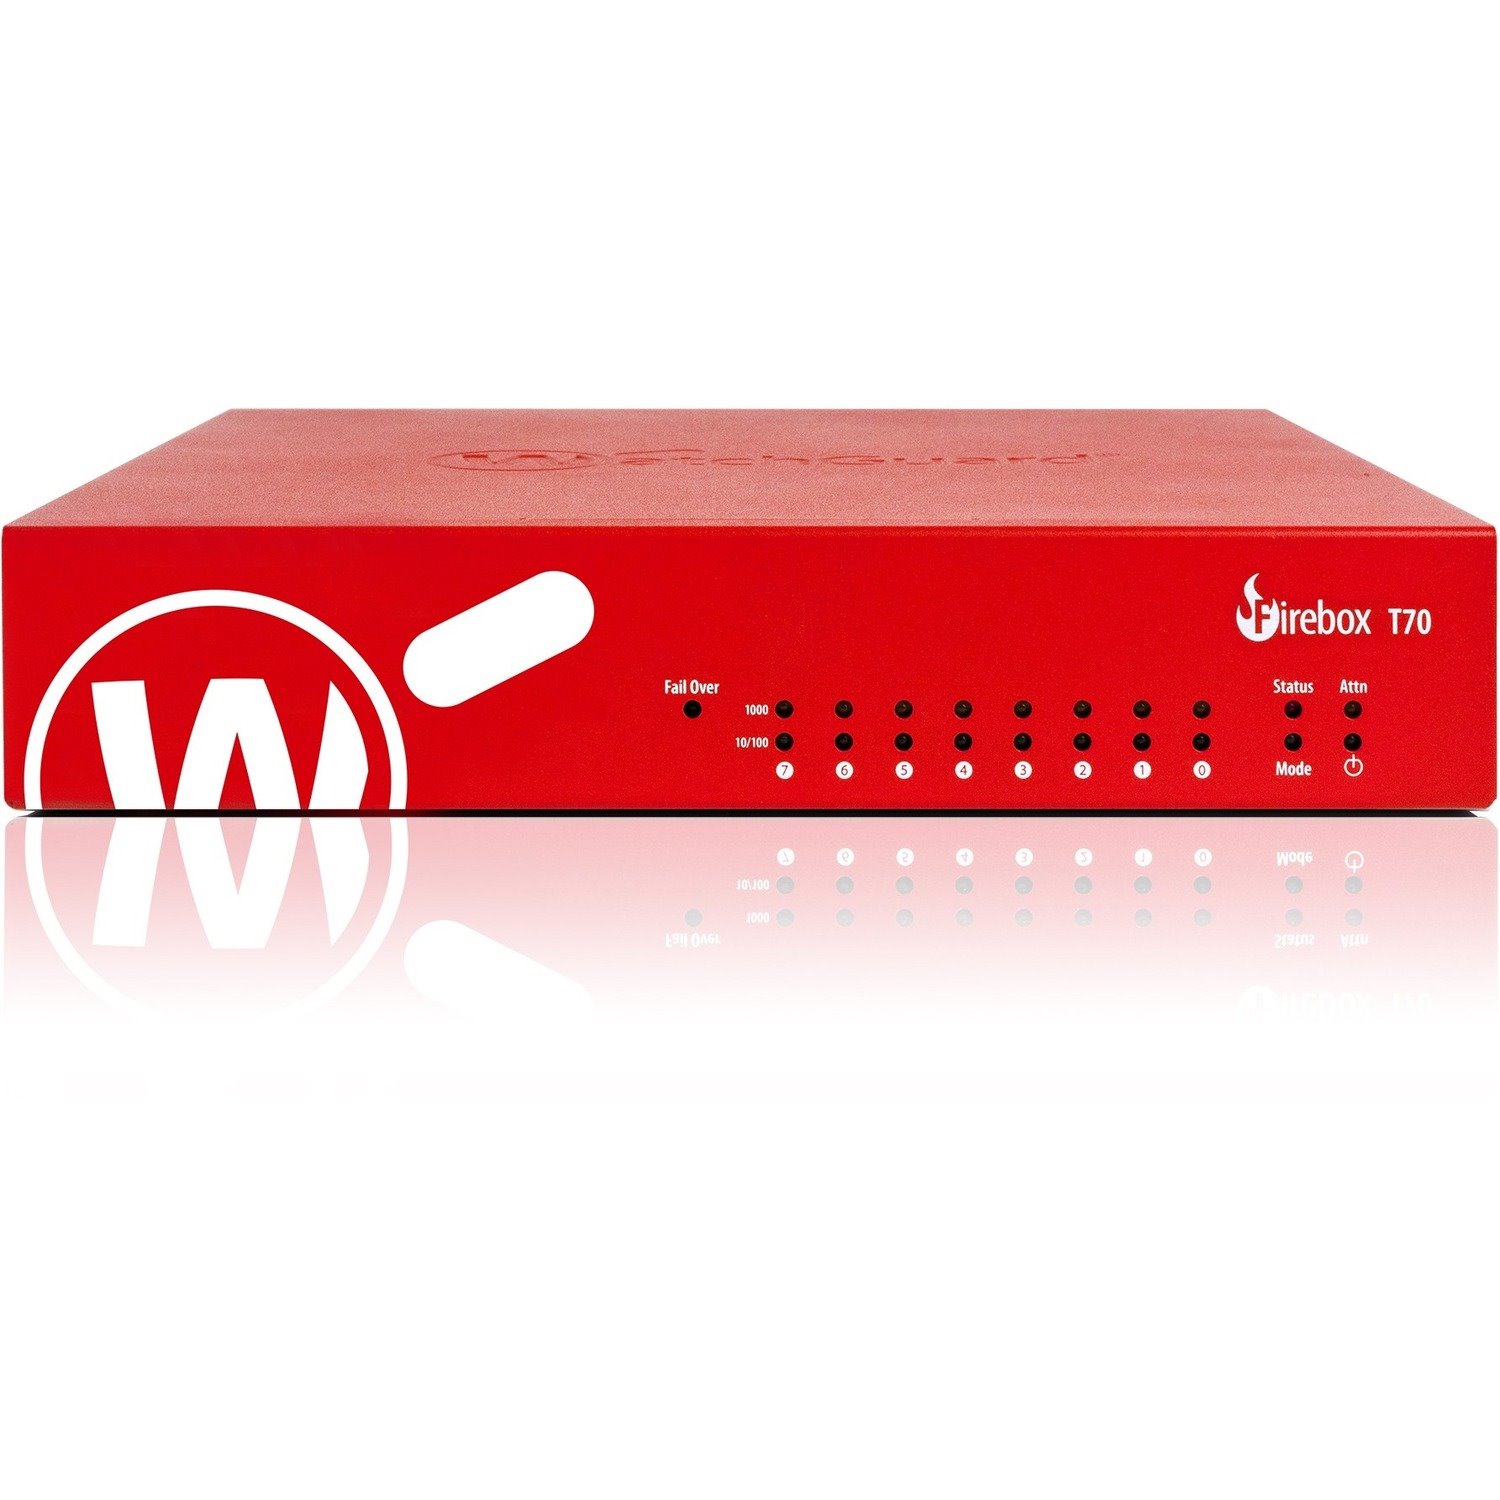 WatchGuard Firebox T70 Network Security/Firewall Appliance